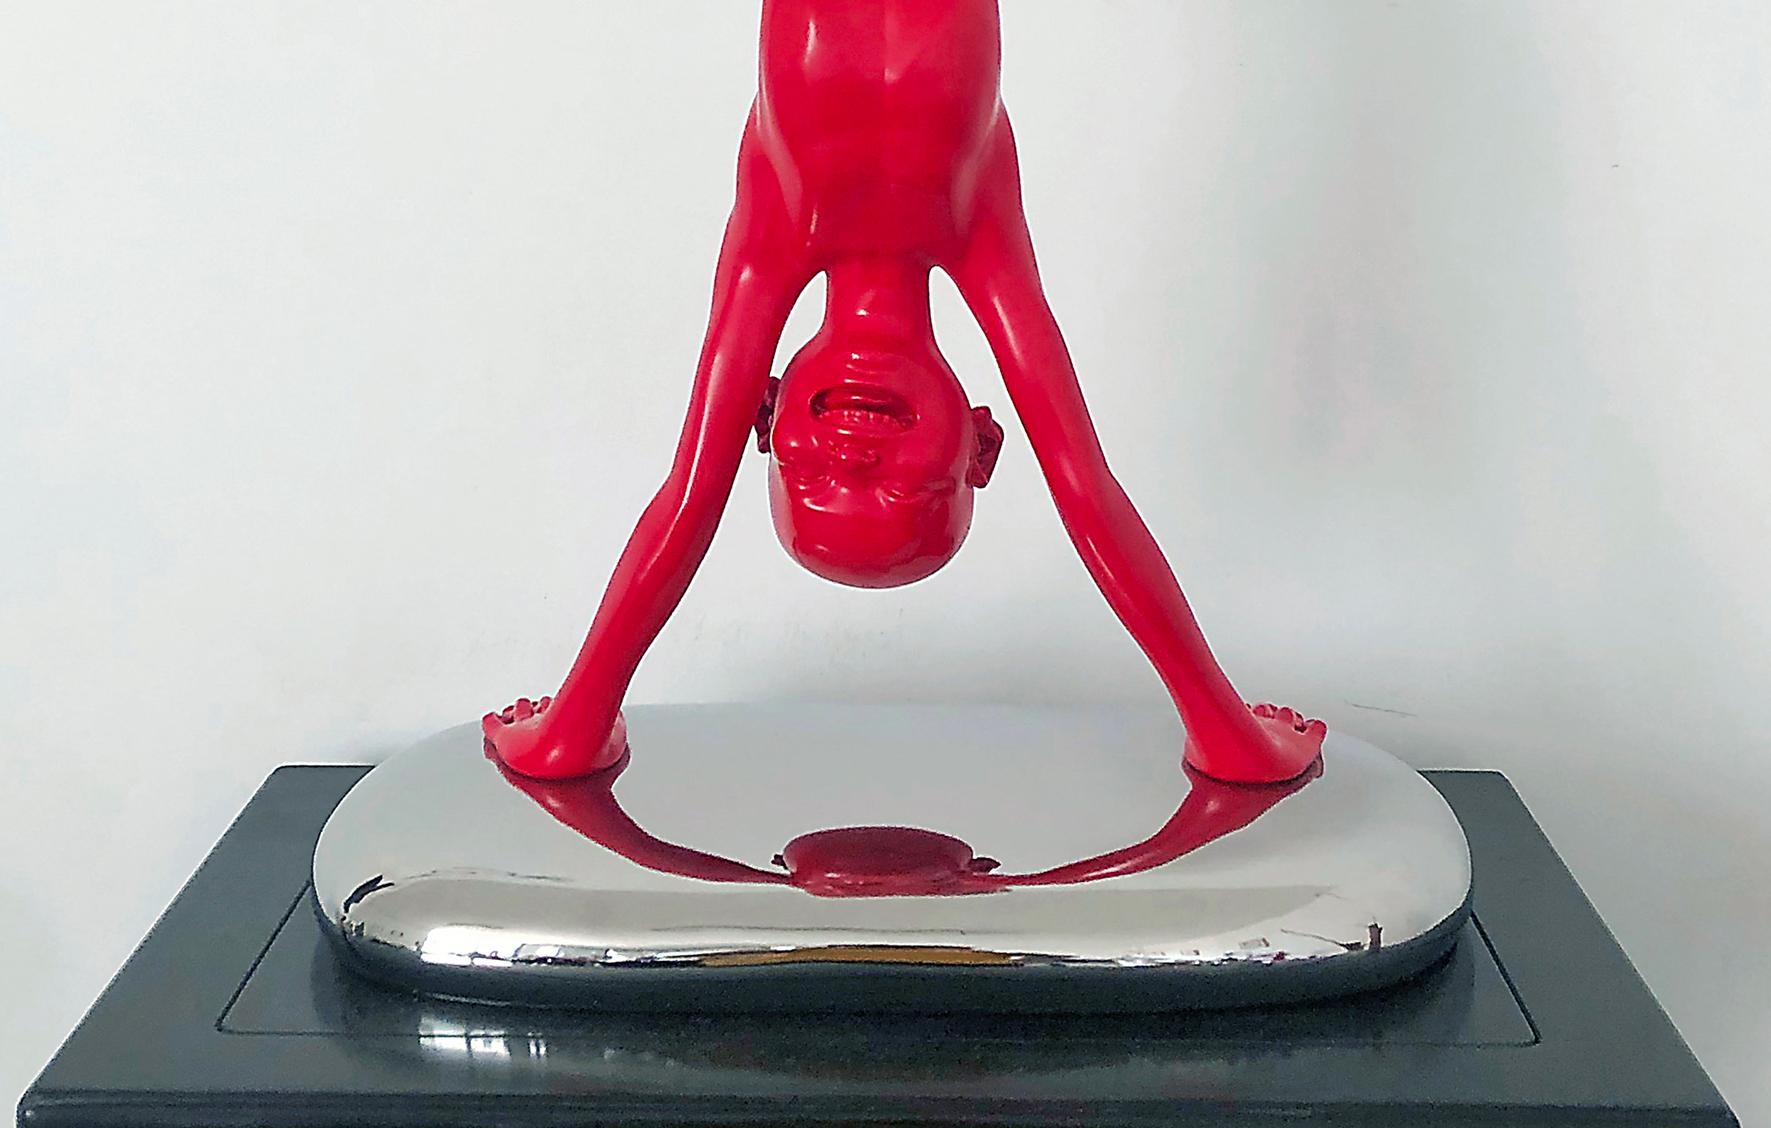 Zeitgenössische surreale Skulptur des neuen Realisten Chen Wenling-Handstands  – Sculpture von Chen Wenling 